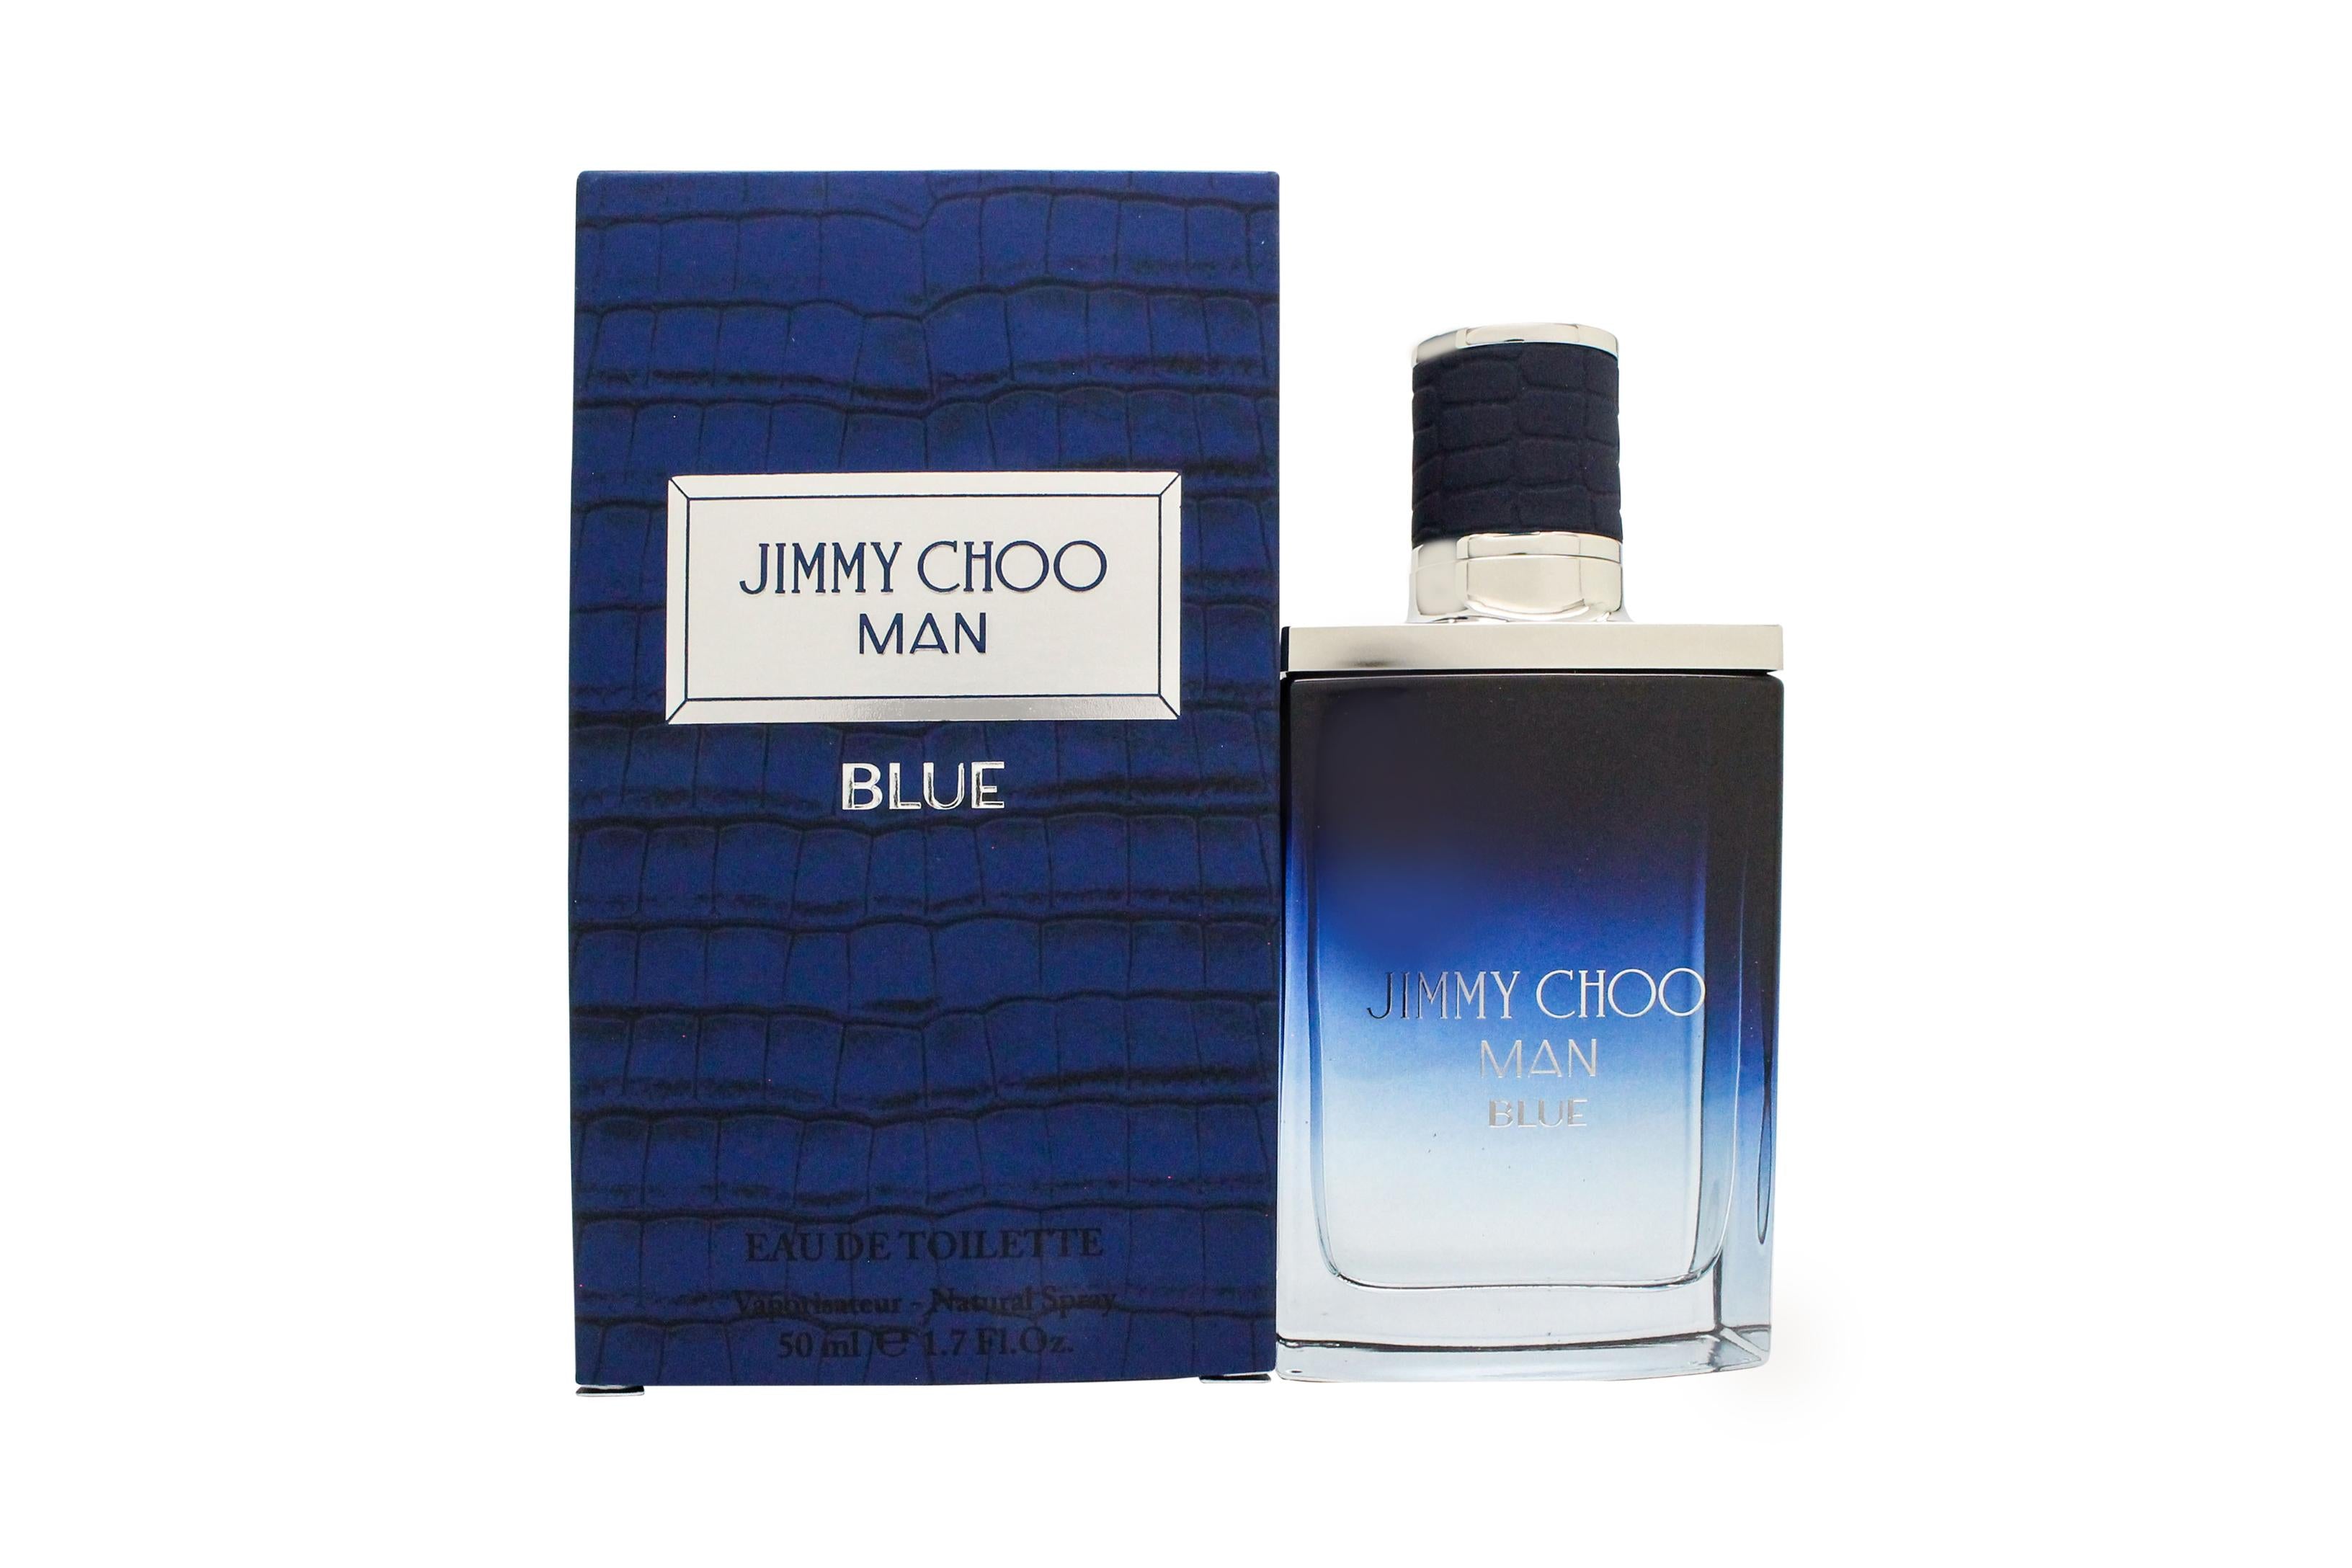 View Jimmy Choo Man Blue Eau de Toilette 50ml Spray information